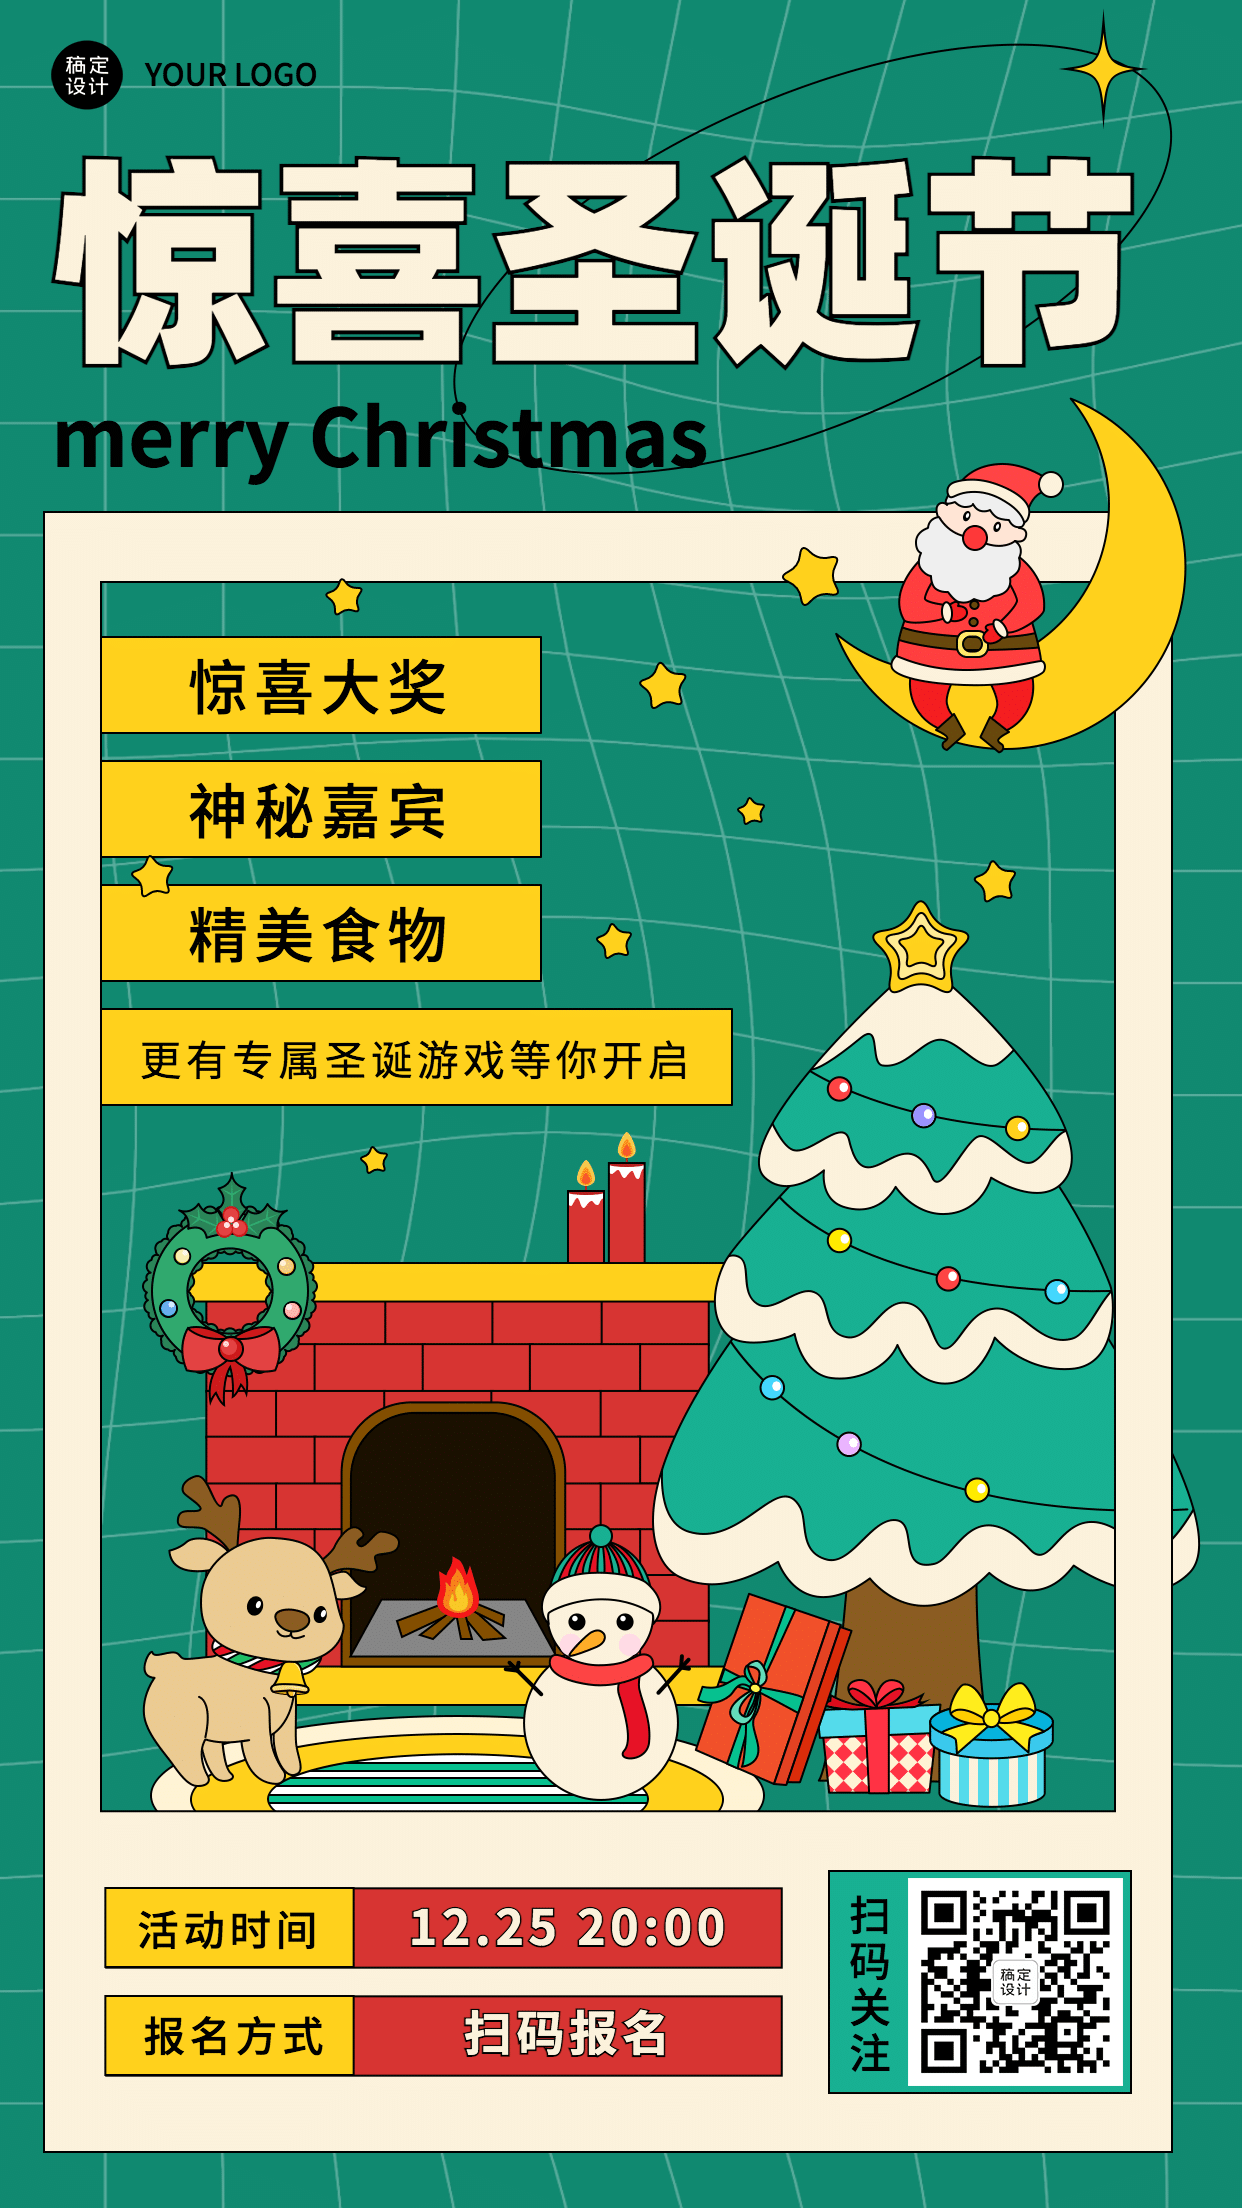 圣诞节活动促销福利手绘插画手机海报